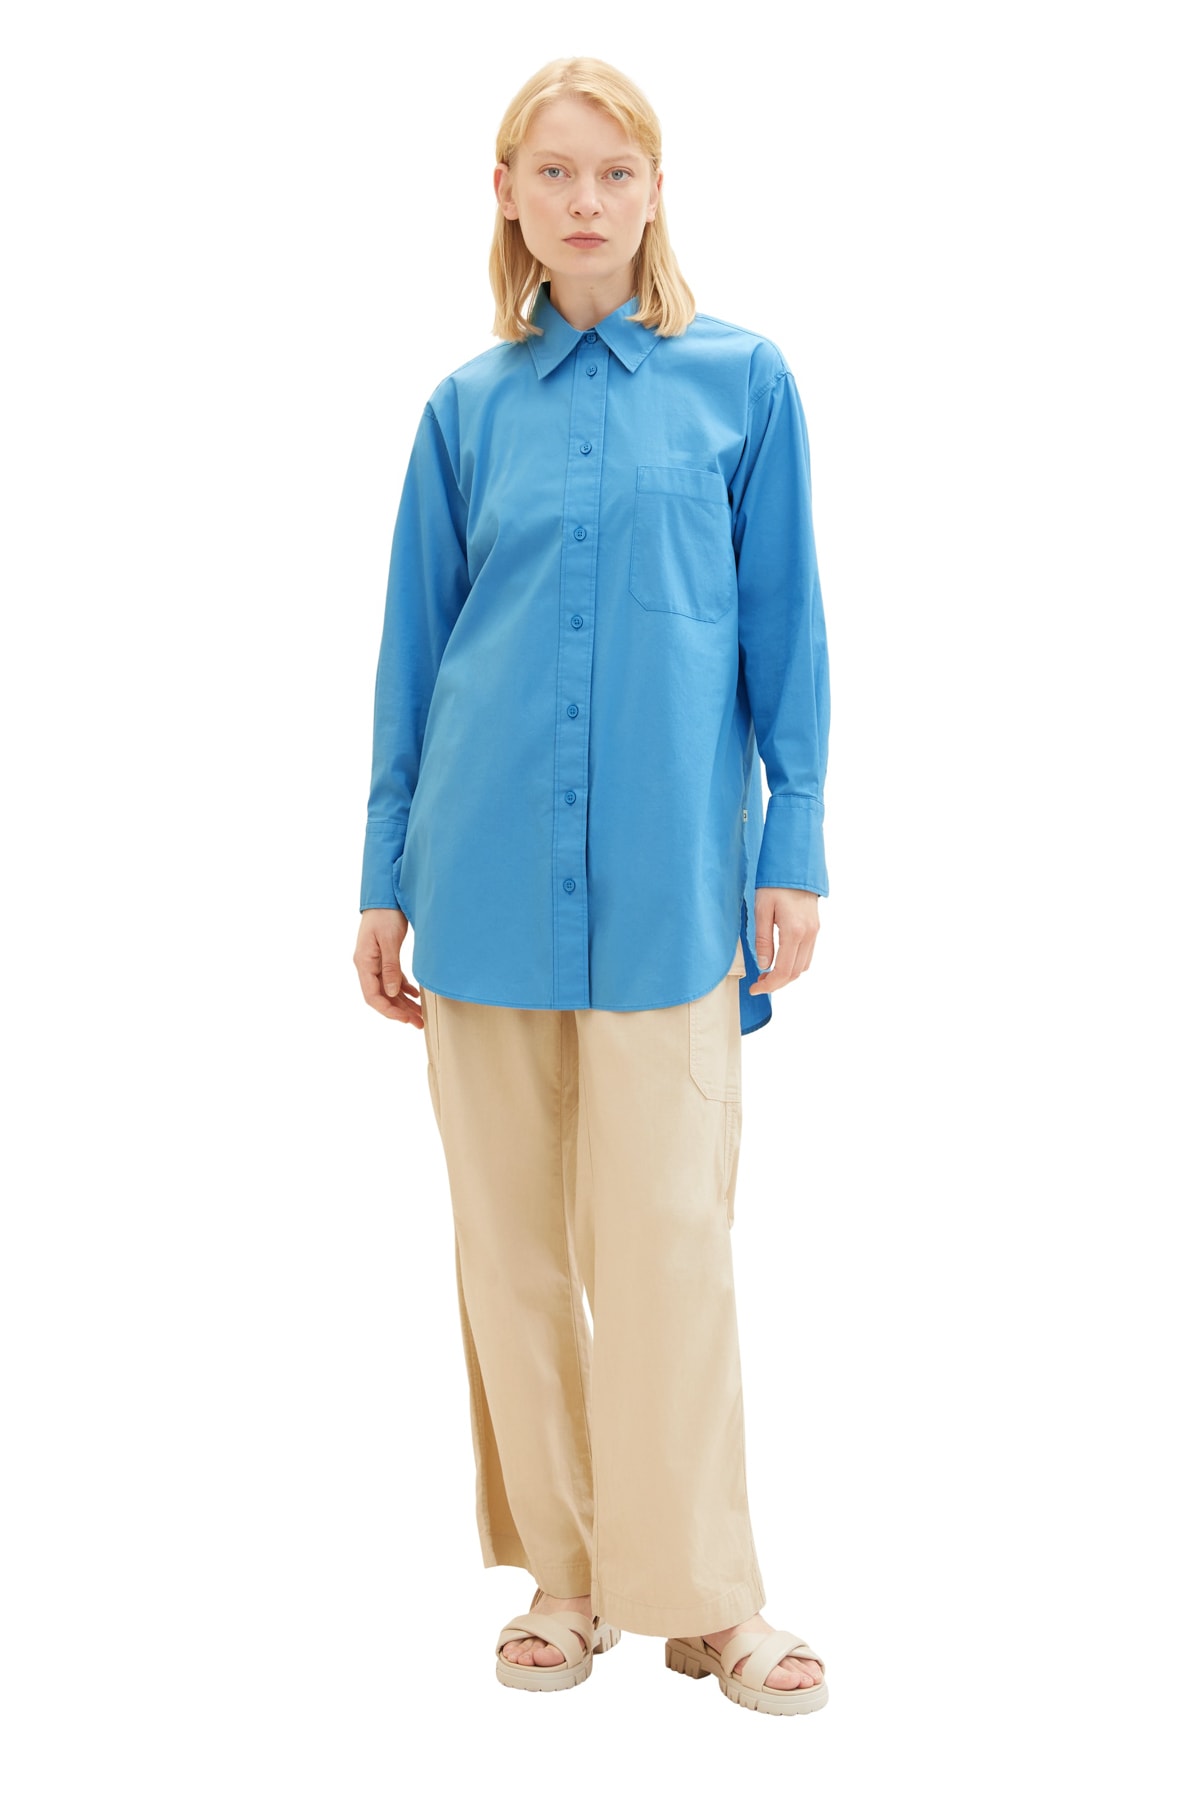 Рубашка Женская/Девочка водный спорт синяя Tom Tailor Denim, синий бермуды tom tailor размер s синий